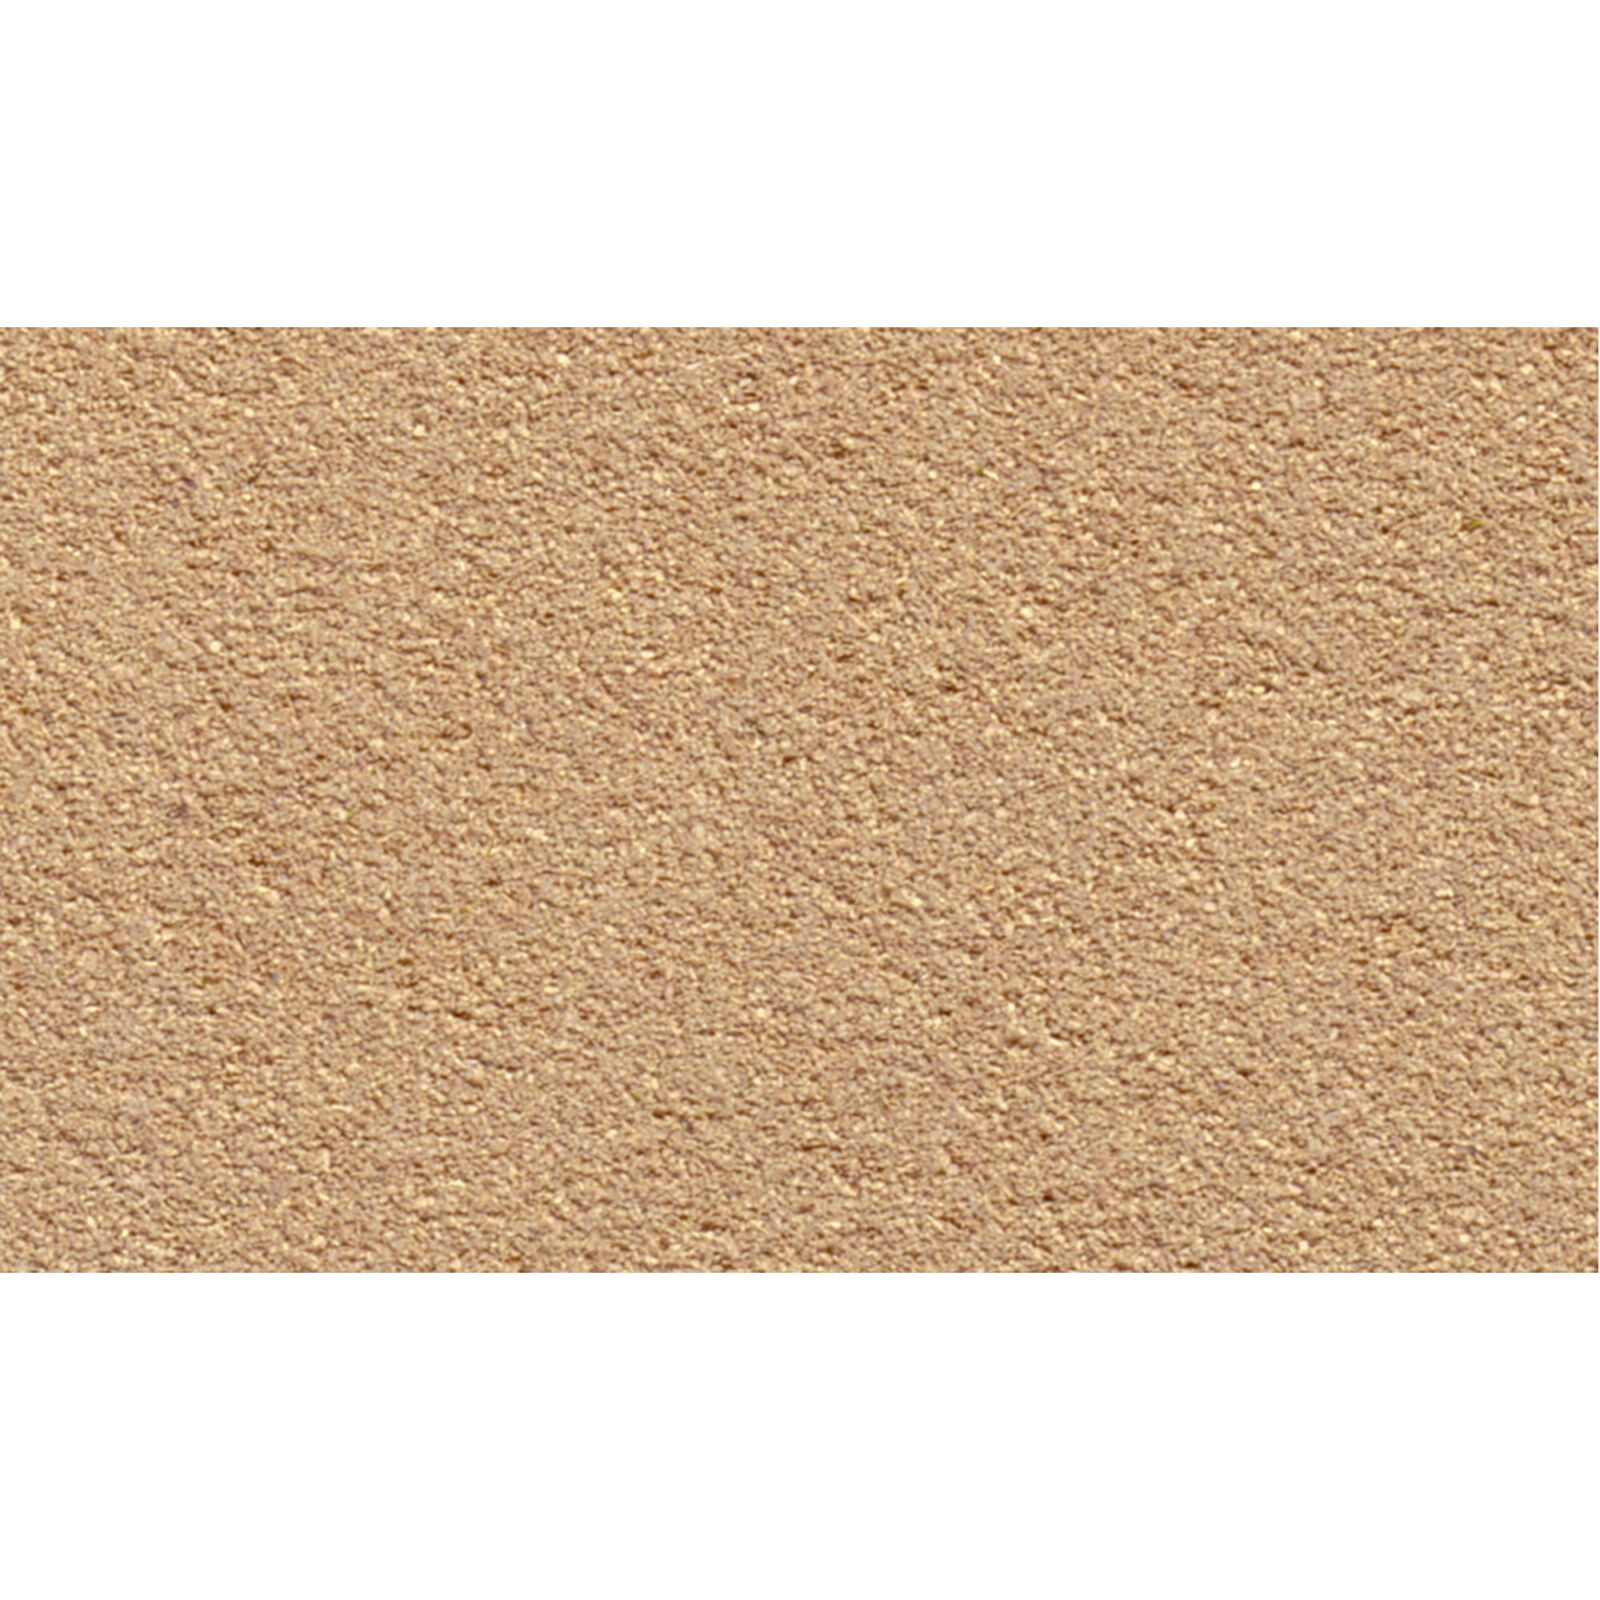 50" x 100" Grass Mat, Desert Sand